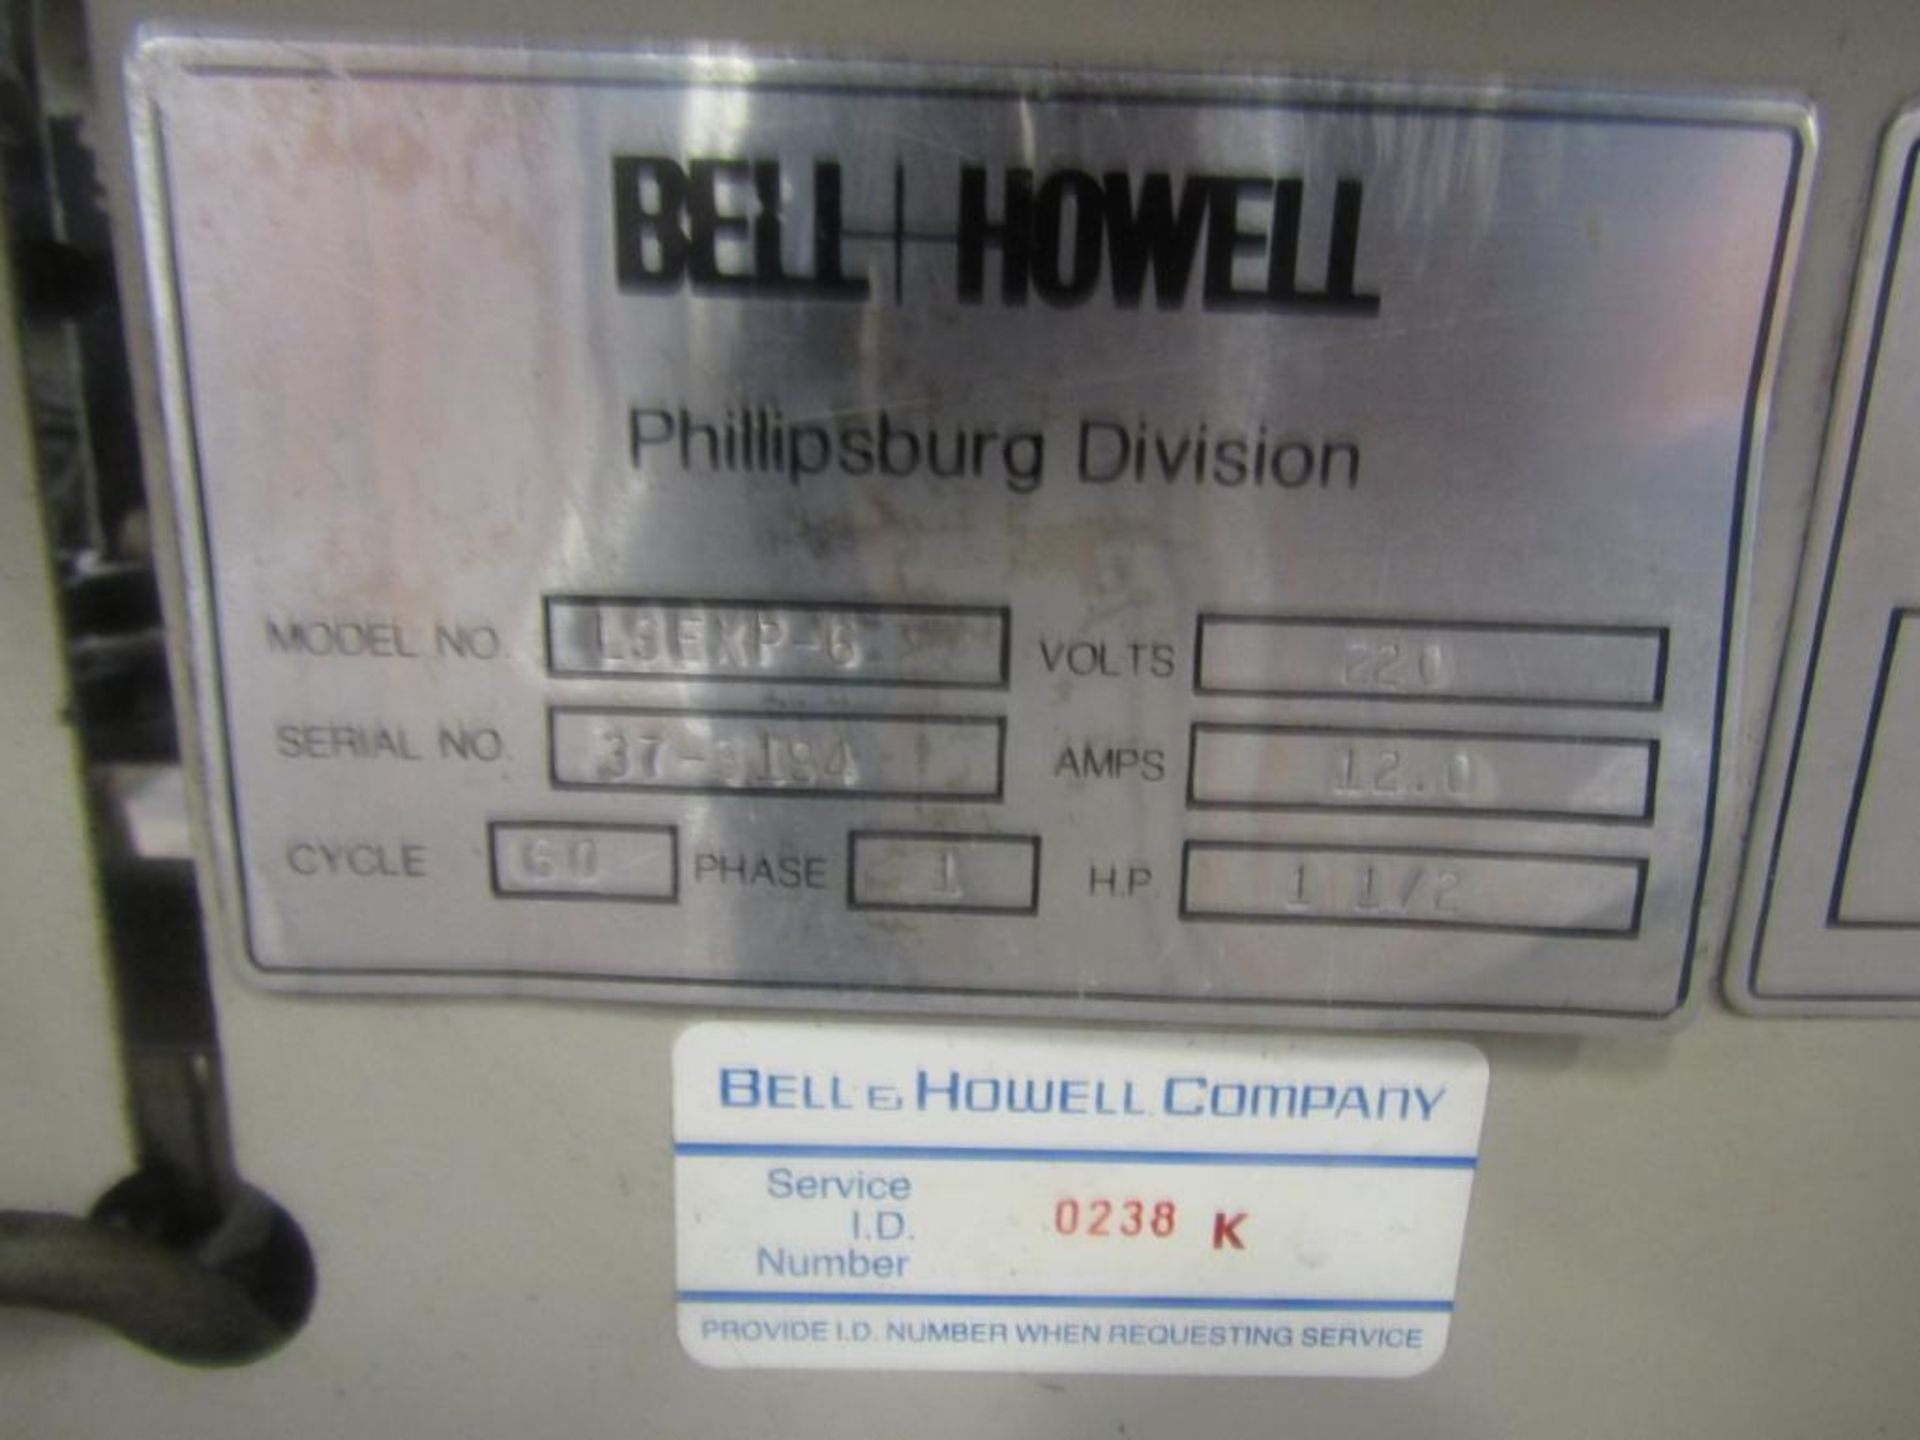 Bell and Howell 6 Station Envelope Inserter Model LSEXP-6, S/N 37-3194(#1) - Image 4 of 4